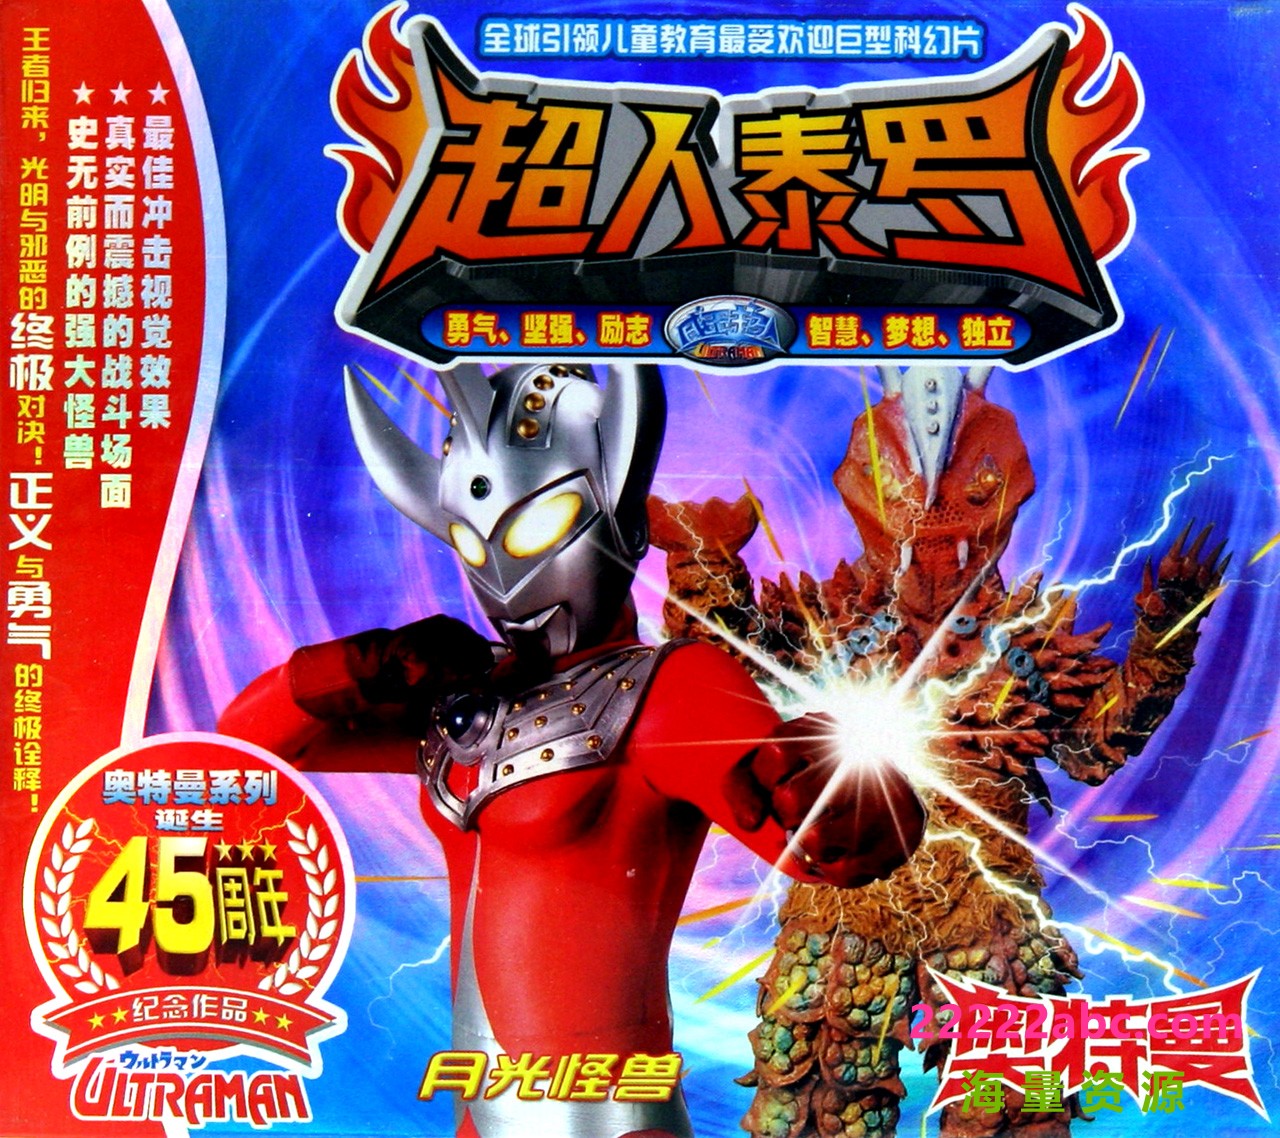 日本科幻特摄剧《Ultraman Taro 泰罗·奥特曼》中文版全53集下载 mp4/1080p/国语中字4K|1080P高清